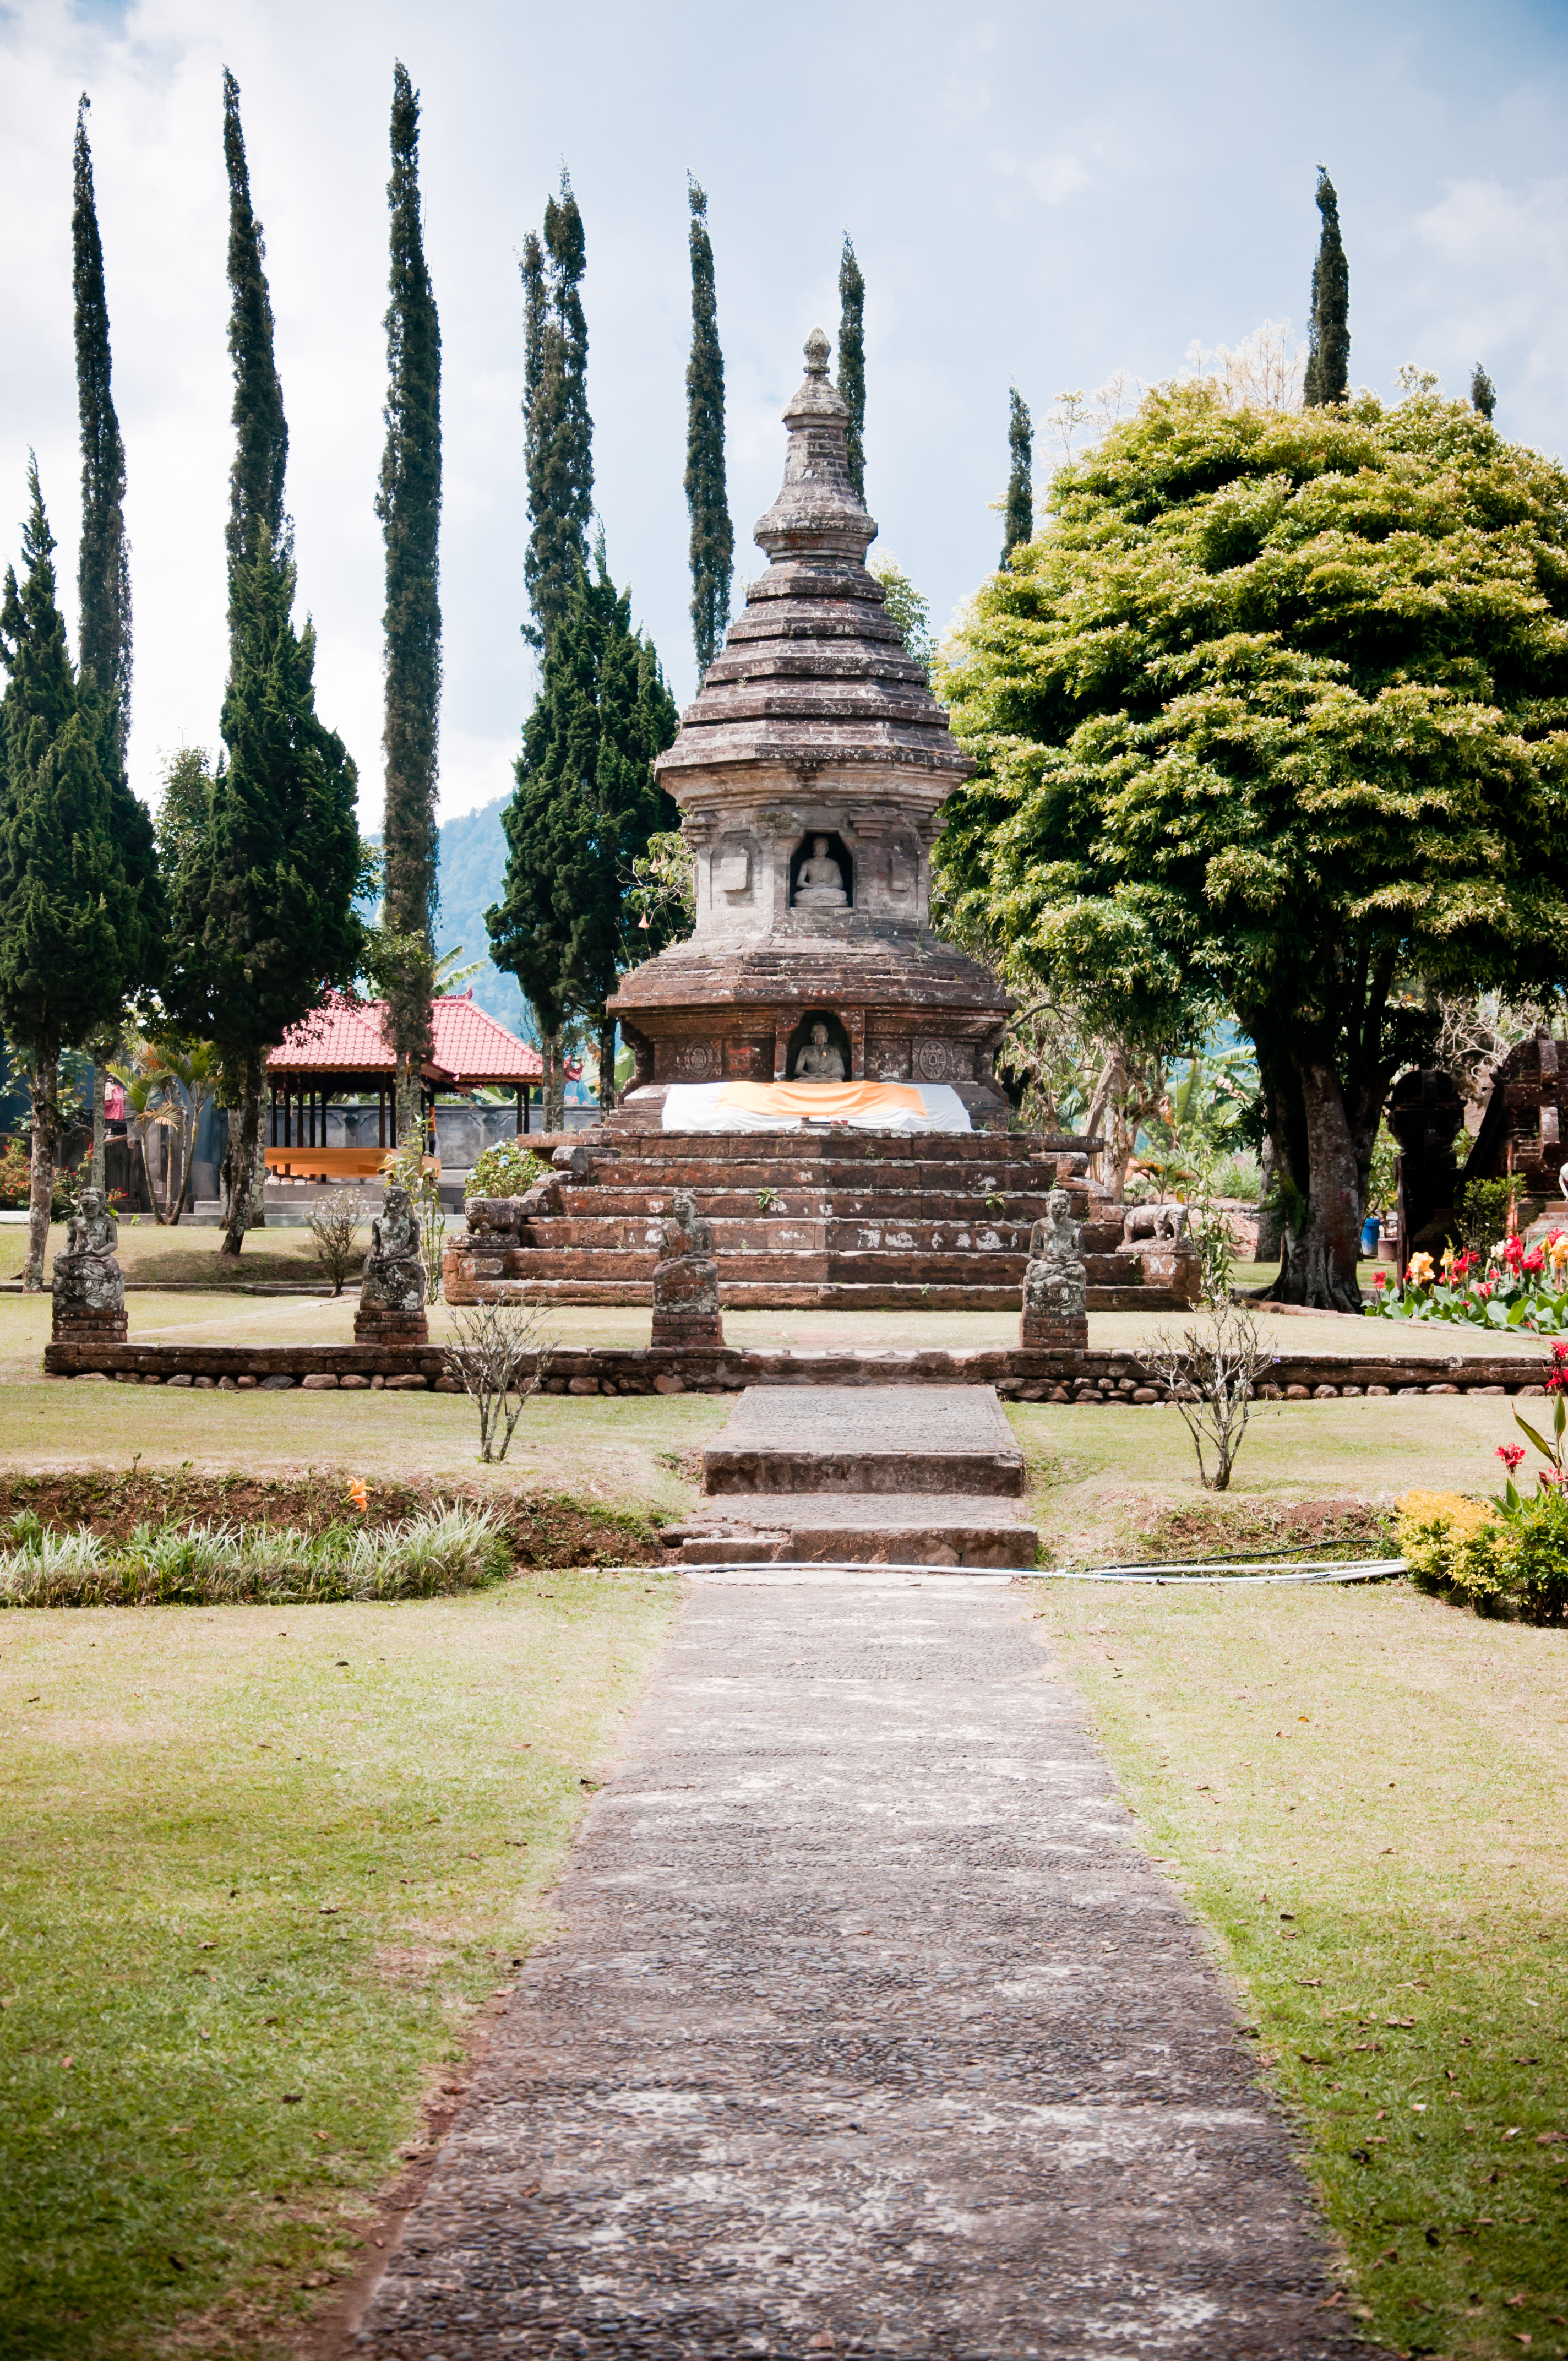 Pura ulun danu temple in bali photo